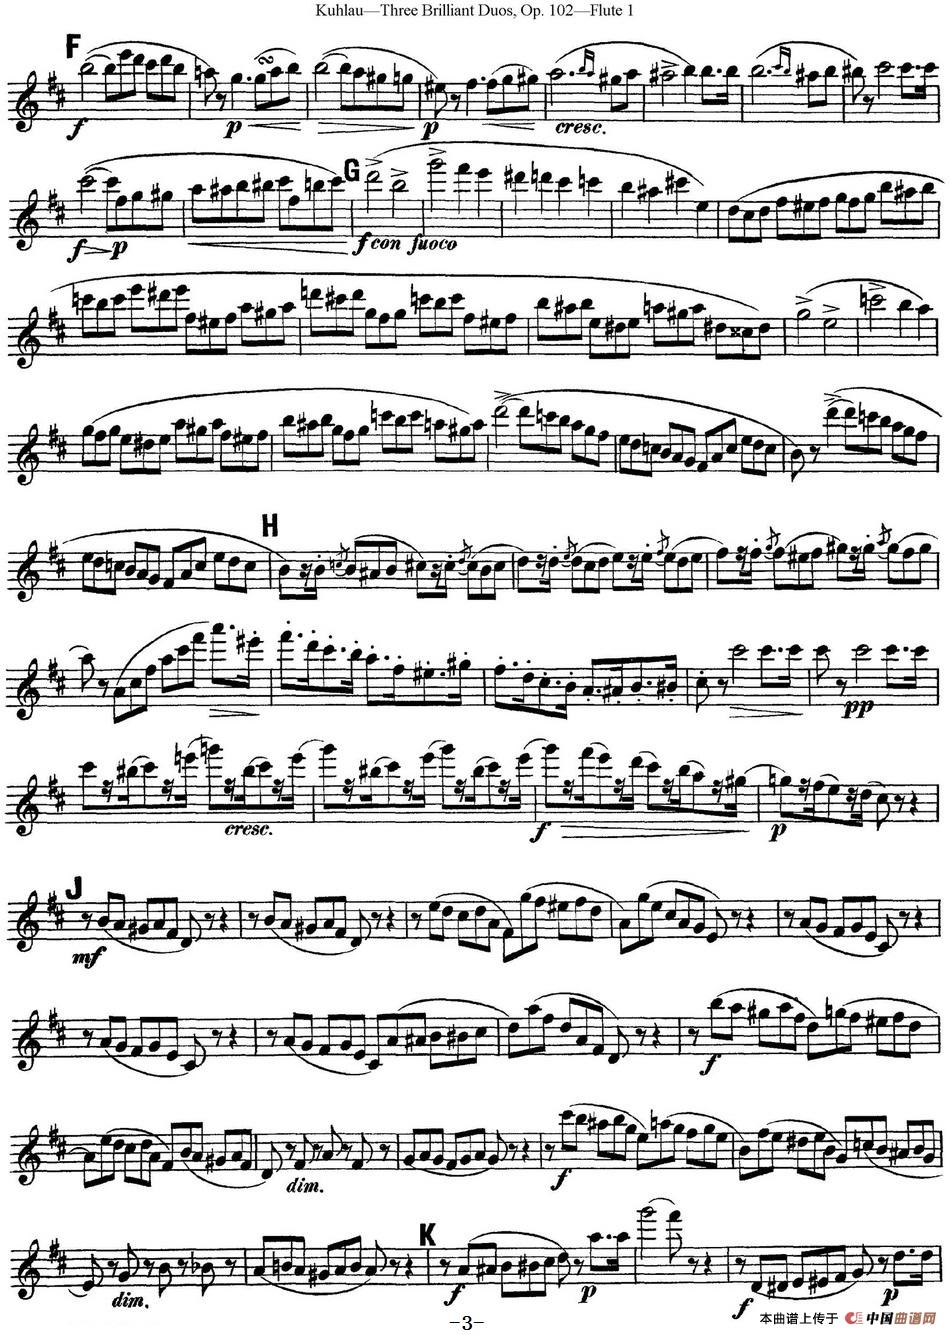 库劳长笛二重奏练习三段OP.102——Flute 1（NO.1）